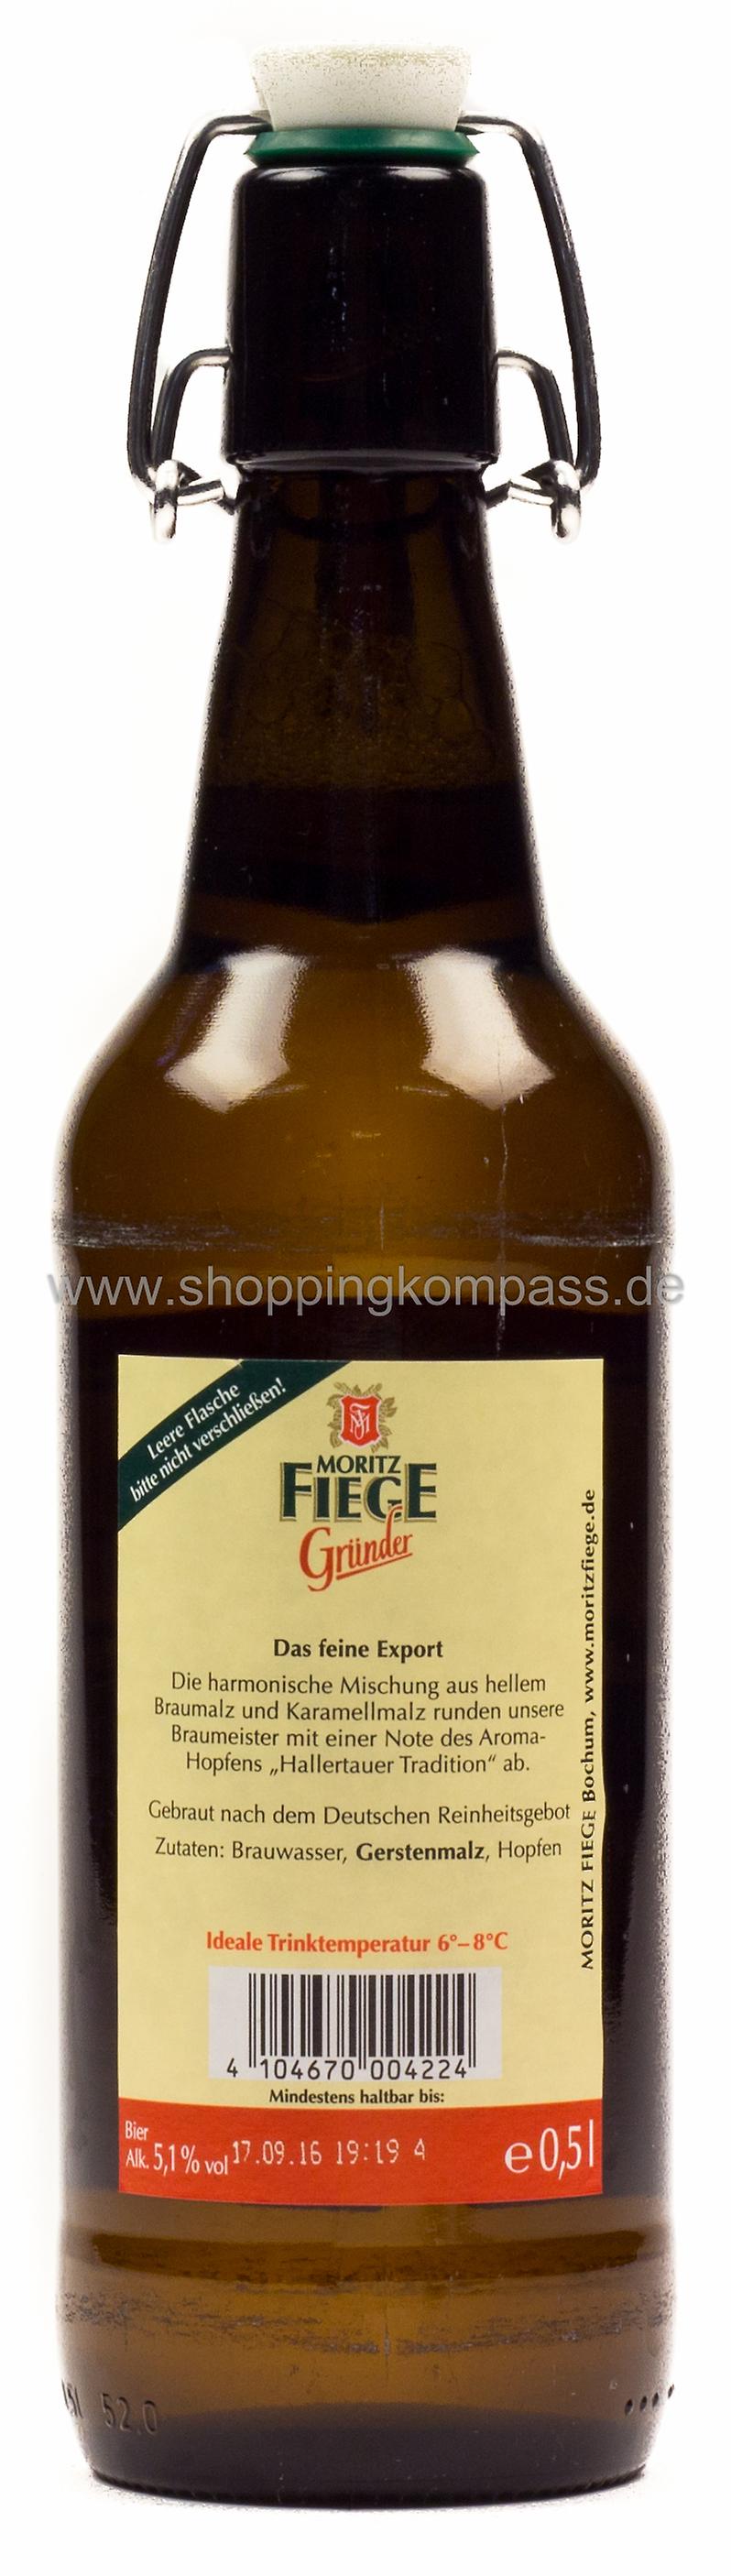 Moritz Fiege Gründer Bügel Kasten 20 x 0,5 l Glas Mehrweg